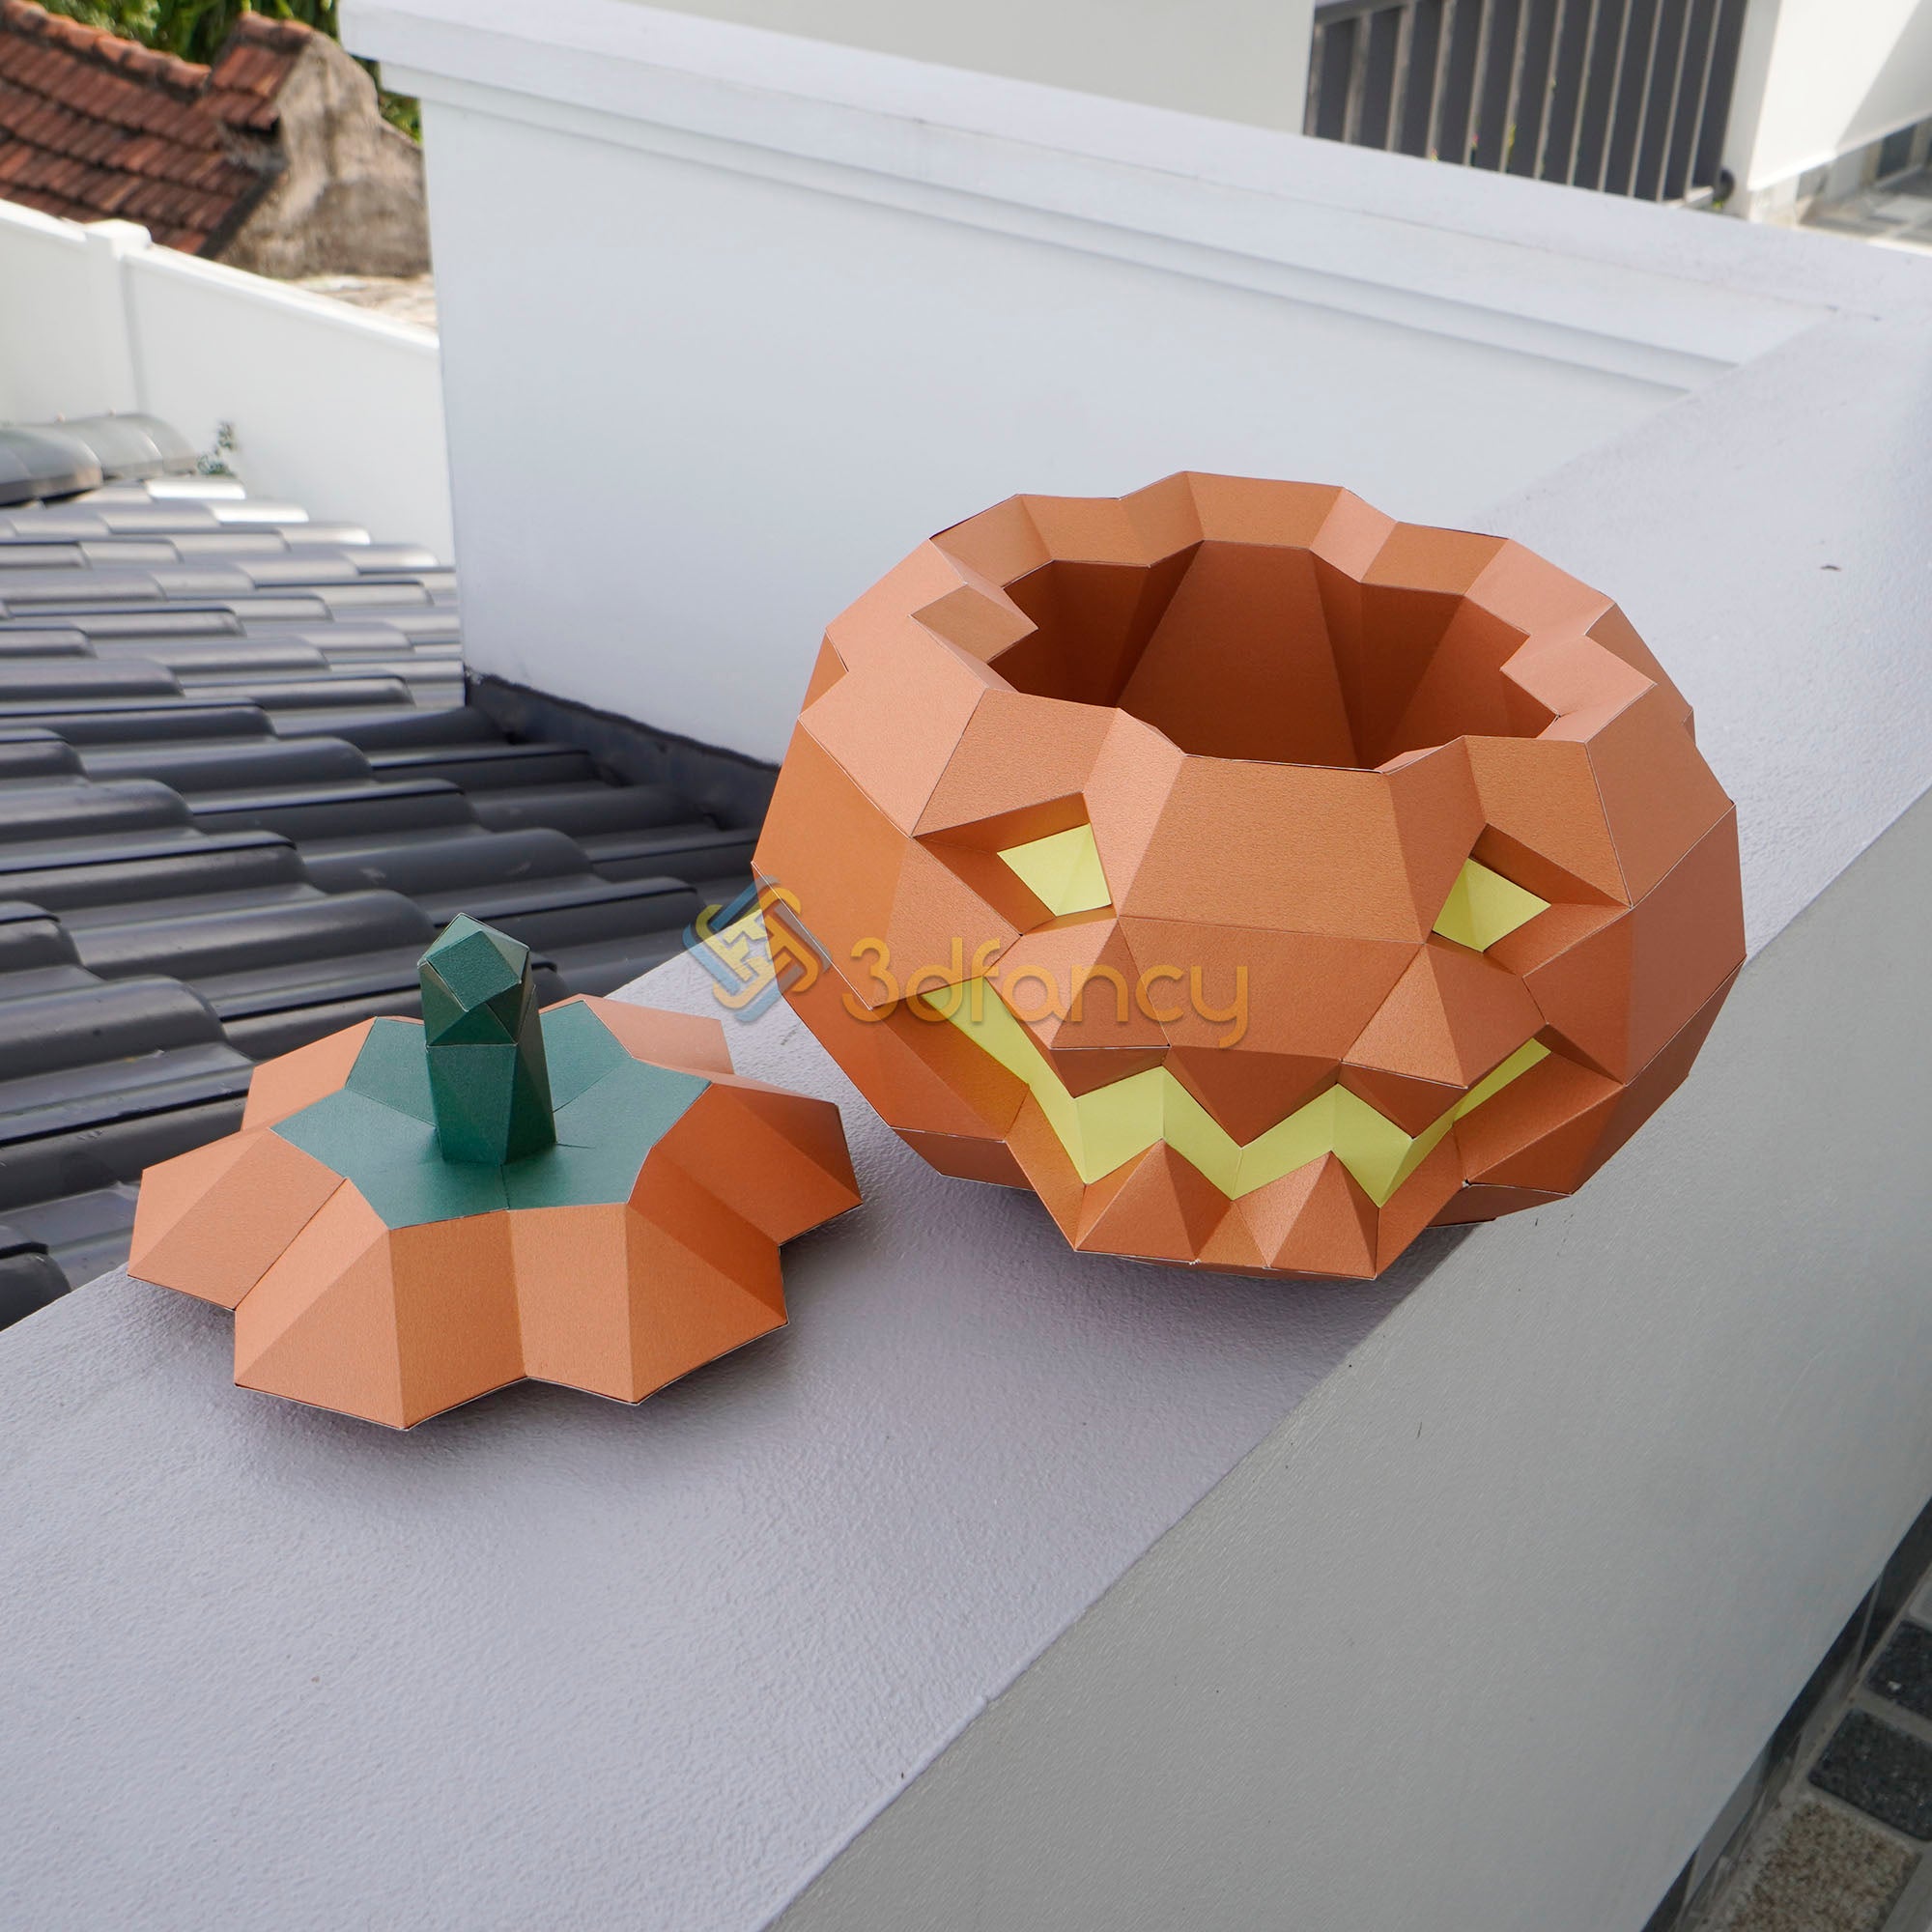 Halloween Papercraft 3d Pumpkin PDF, SVG Template For Cricut, Cameo4, ScanNcut